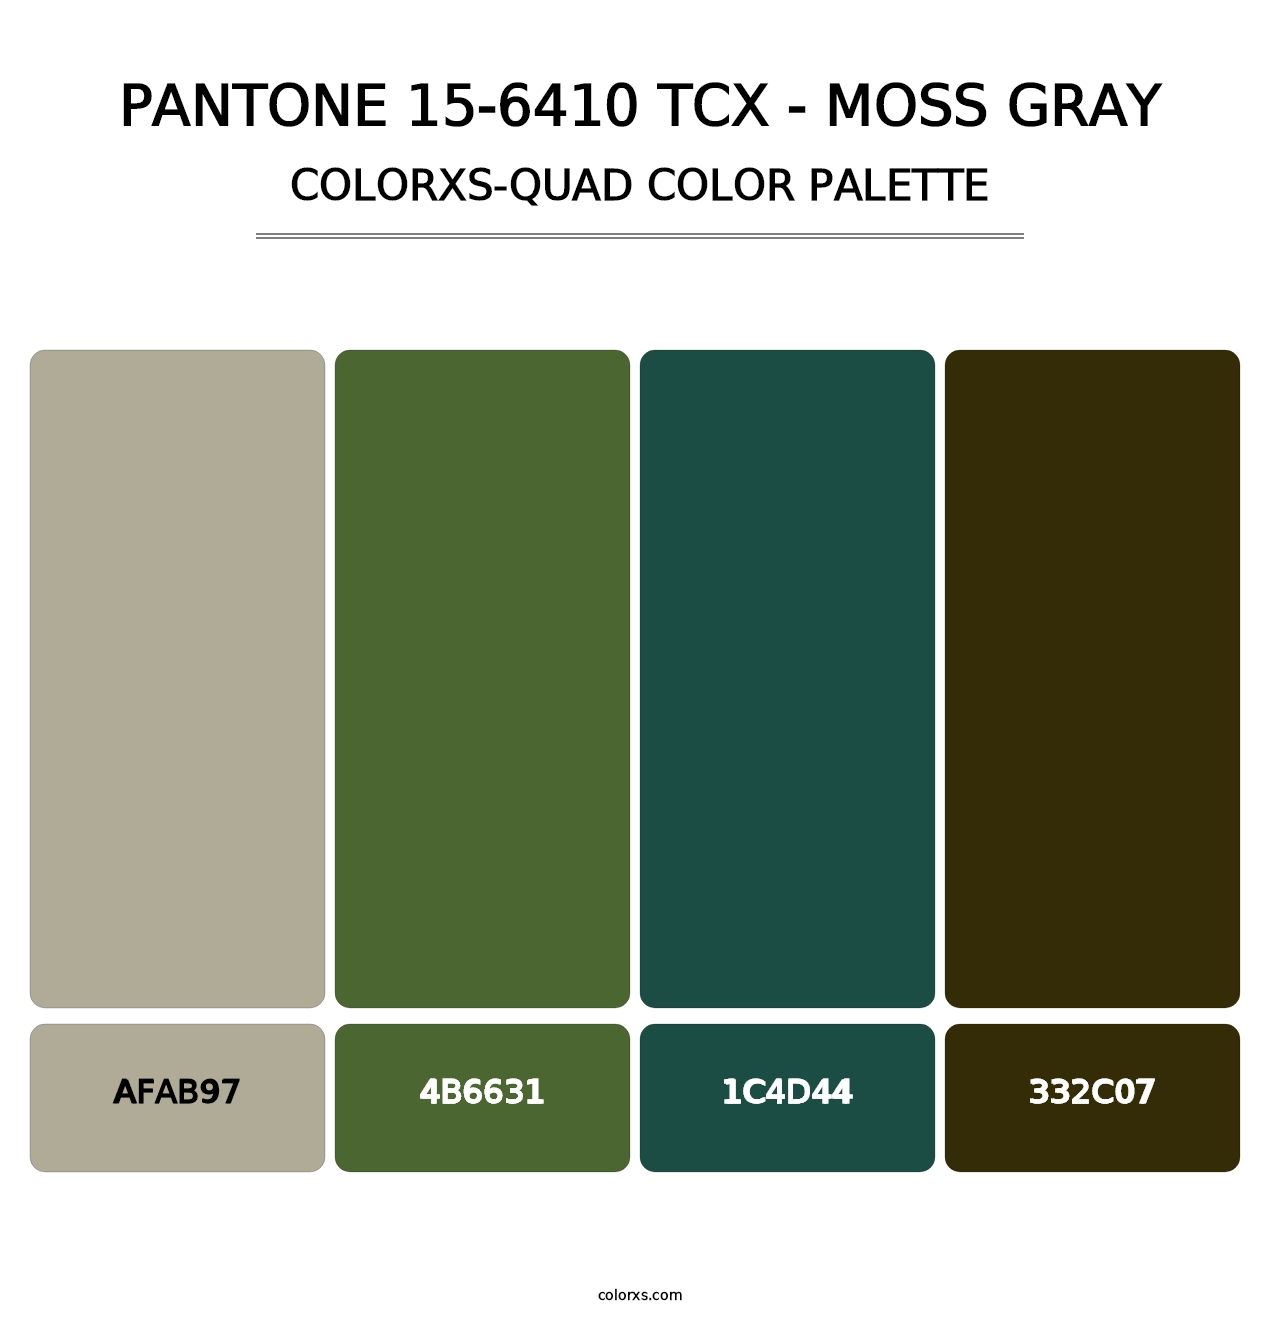 PANTONE 15-6410 TCX - Moss Gray - Colorxs Quad Palette